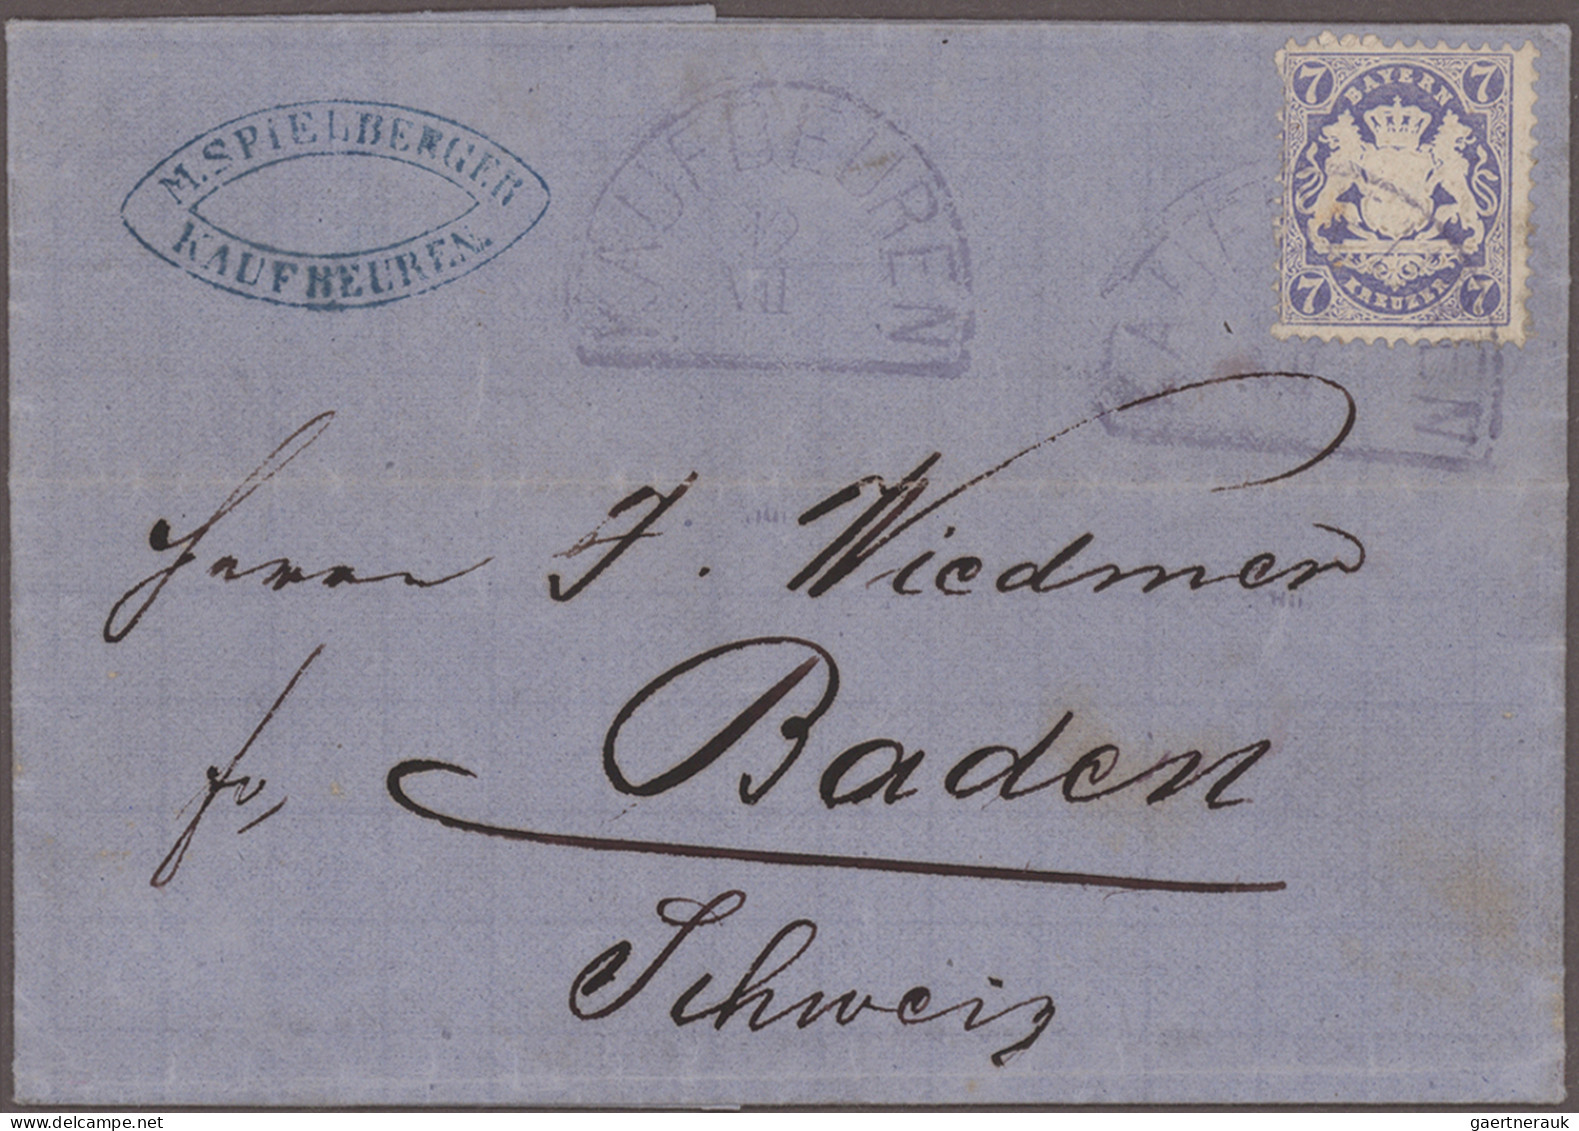 Bayern - Marken und Briefe: 1849/1875, schöne Partie von annähernd 100 Belegen a